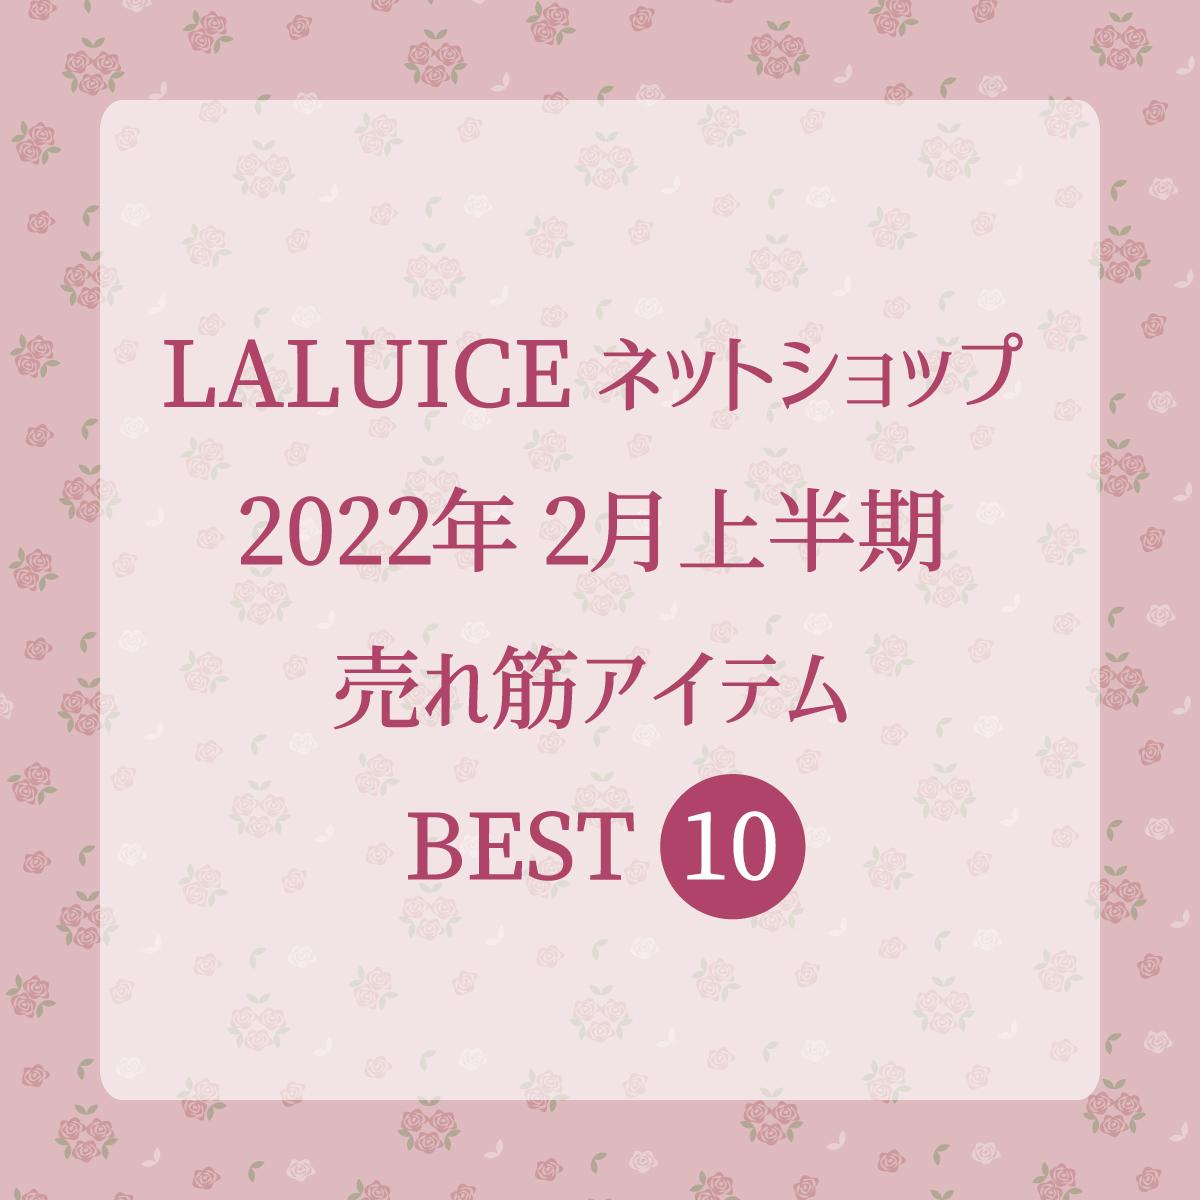 2022年2月上半期(2/1～2/15) LALUICEネットショップ売れ筋アイテム BEST10